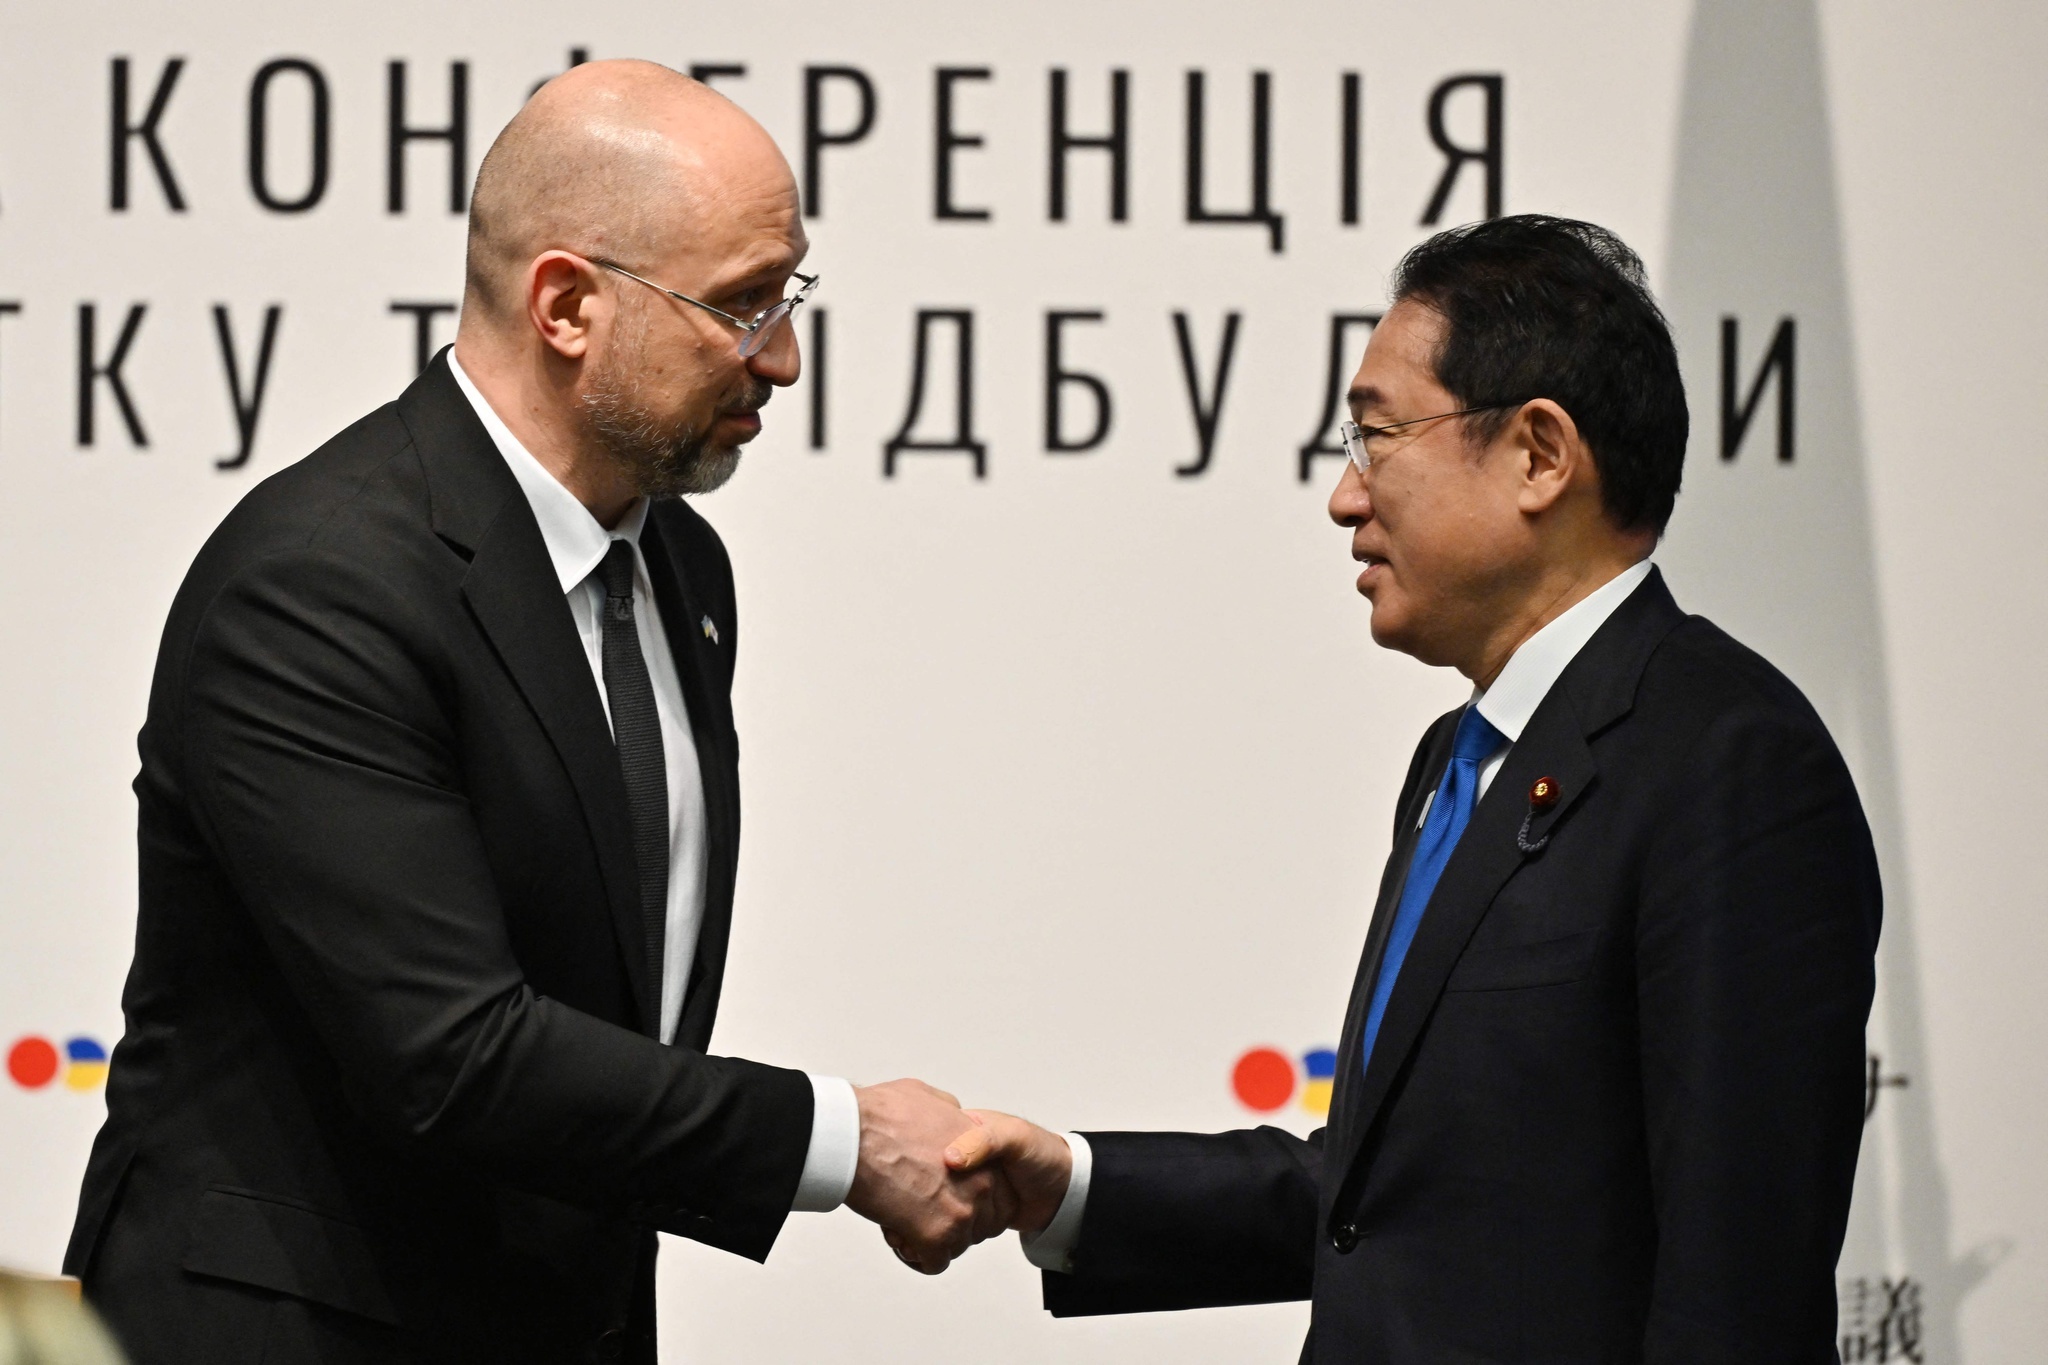 日・ウクライナ経済復興推進会議 ウクライナ首相が復興協力要請